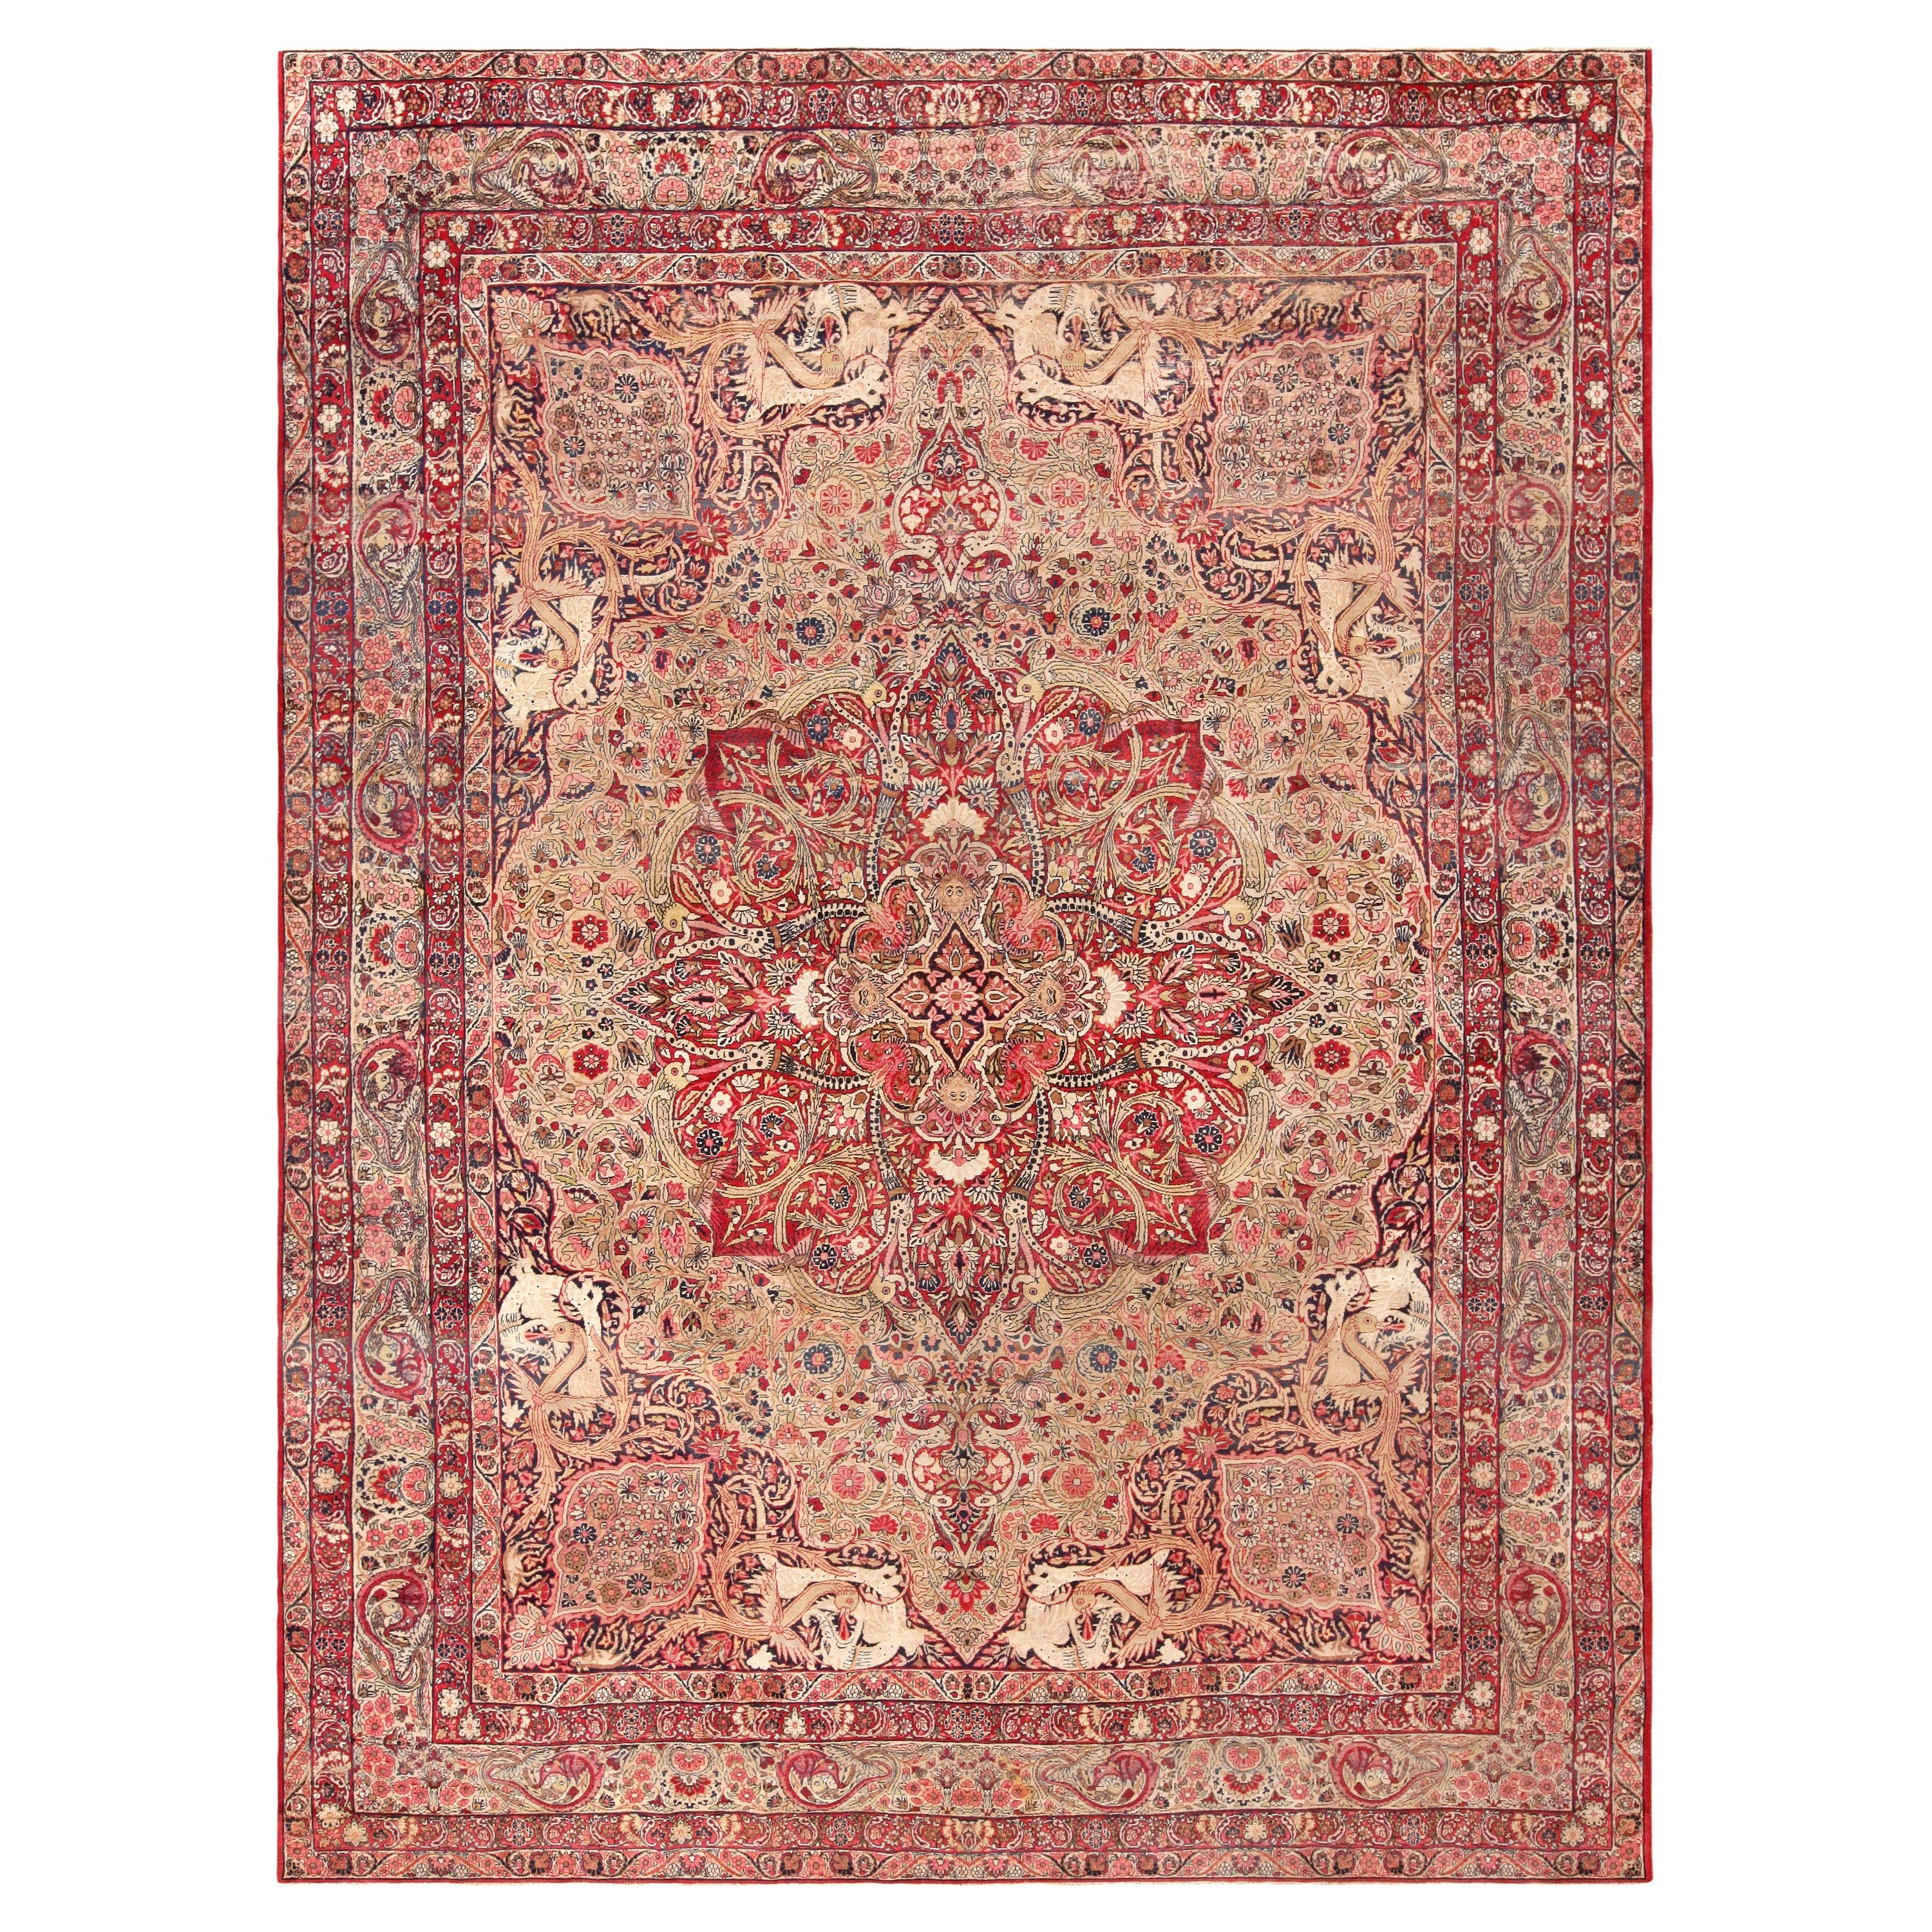 Antiker persischer Kerman-Teppich aus der Nazmiyal-Kollektion. 11 Fuß x 14 Fuß 2 Zoll 